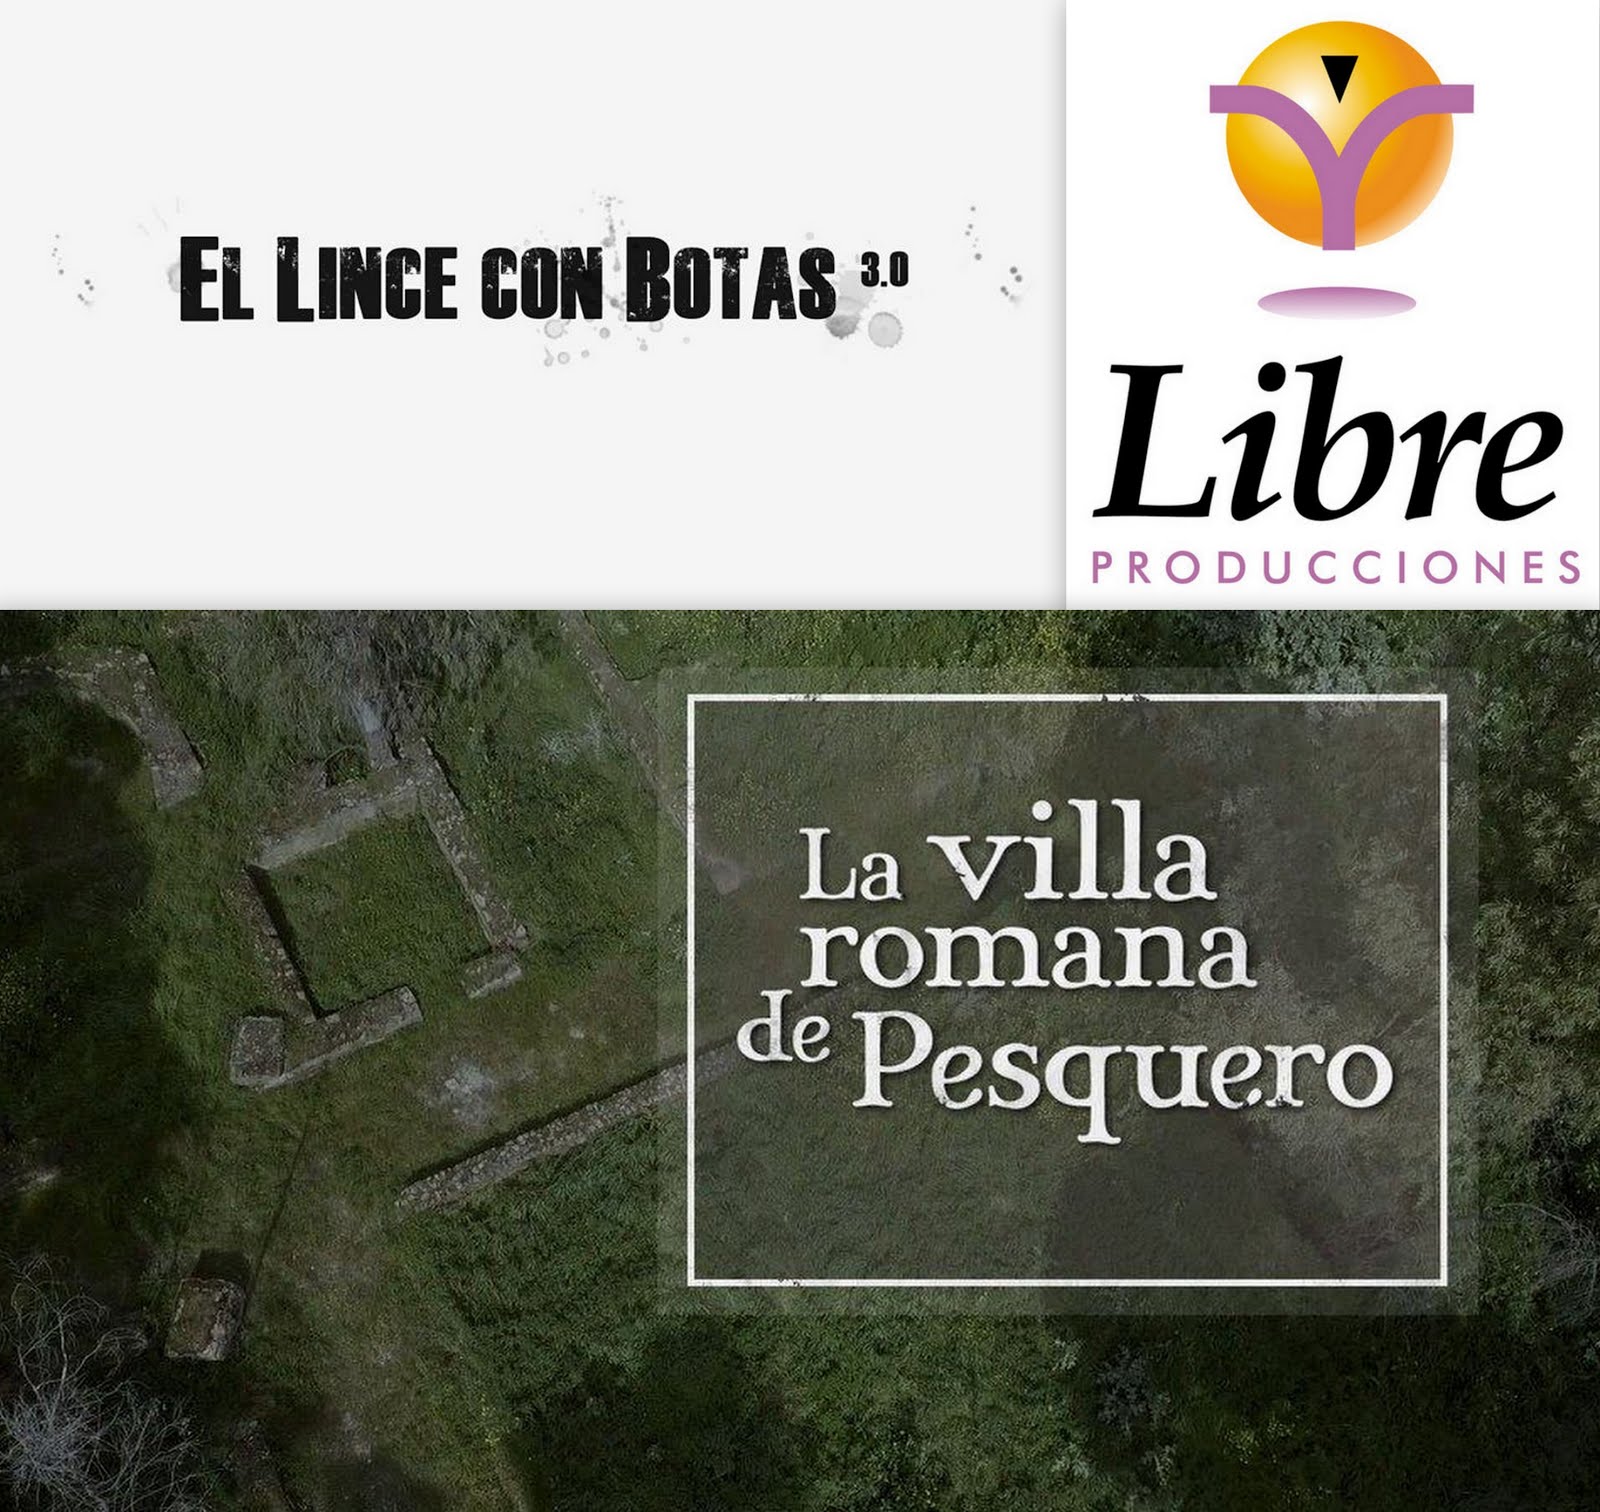 El lince con botas 3.0: La villa romana de Pesquero (Pueblonuevo del Guadiana)